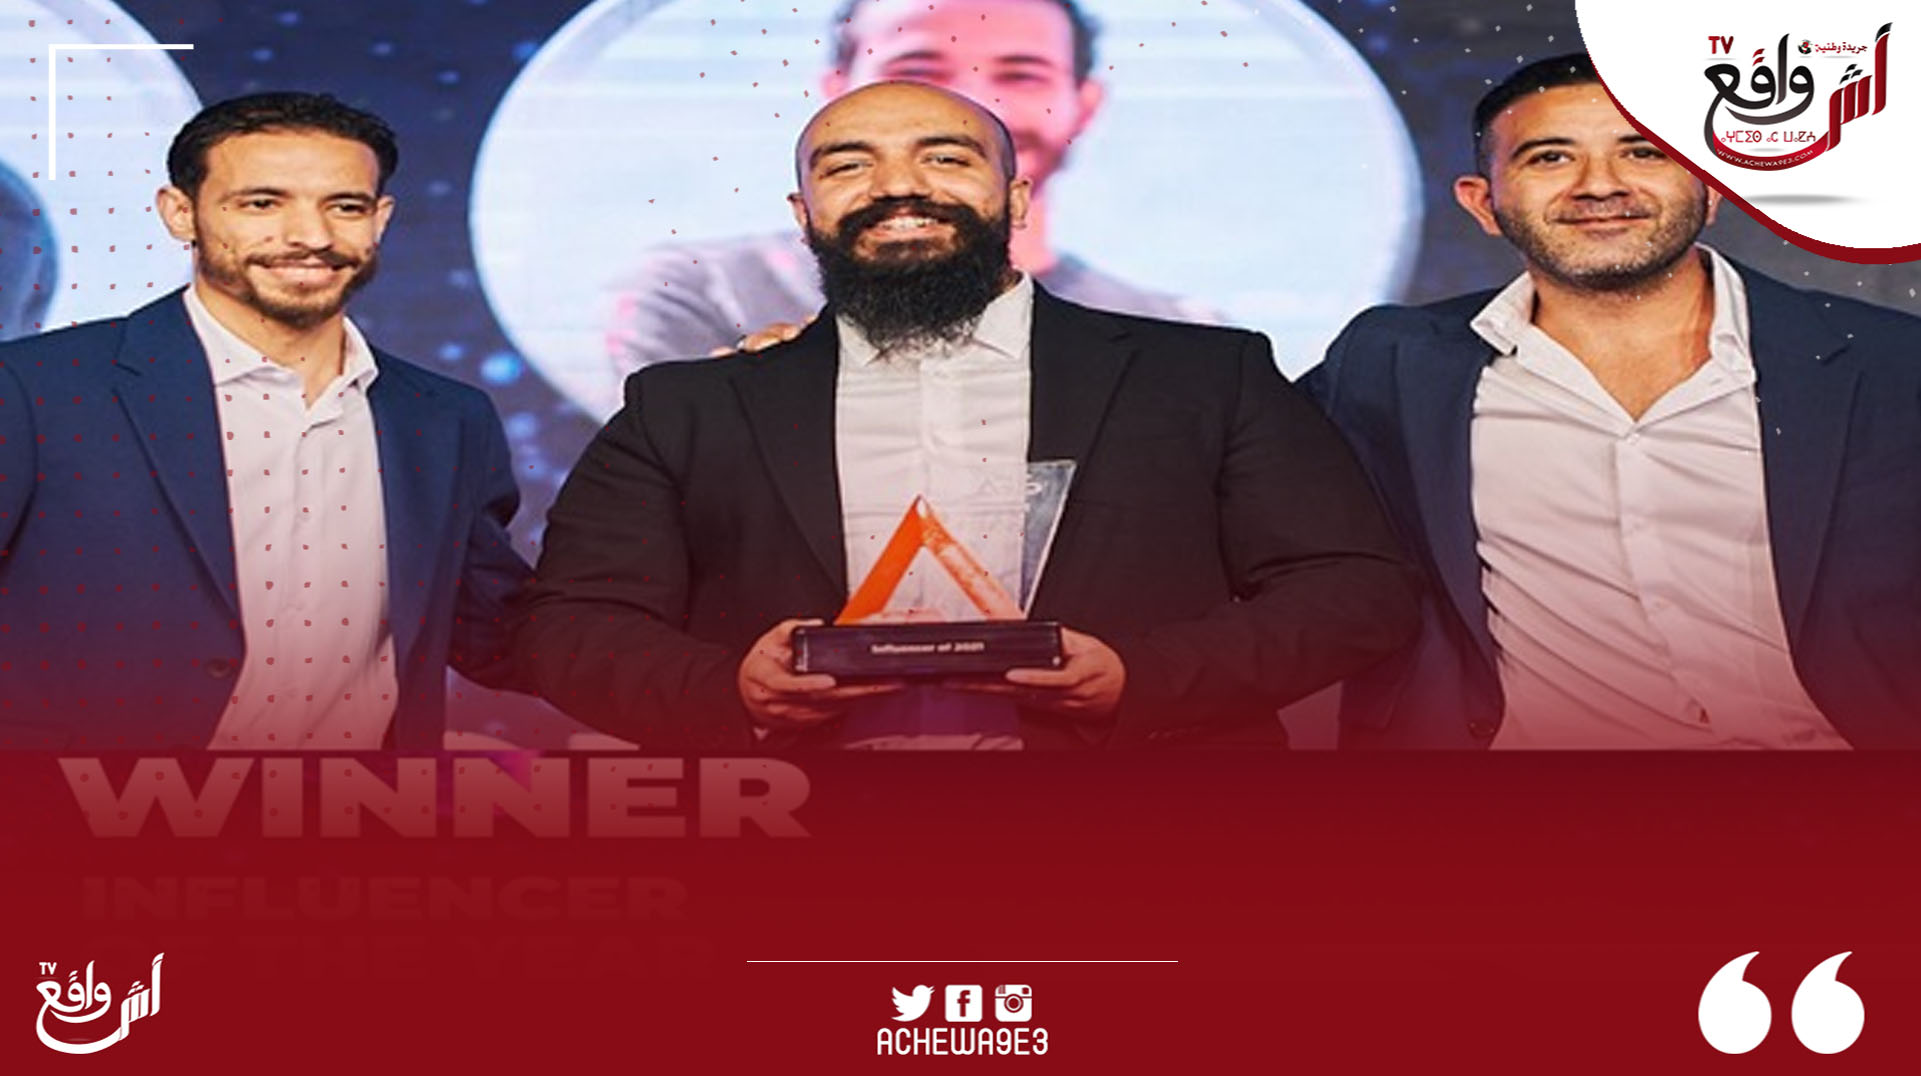 دبي : فوز ثلاث من رواد الأعمال المغاربة بجائزة مؤثر العام لدورهم في خلق فرص شغل للشباب عبر الانترنيت